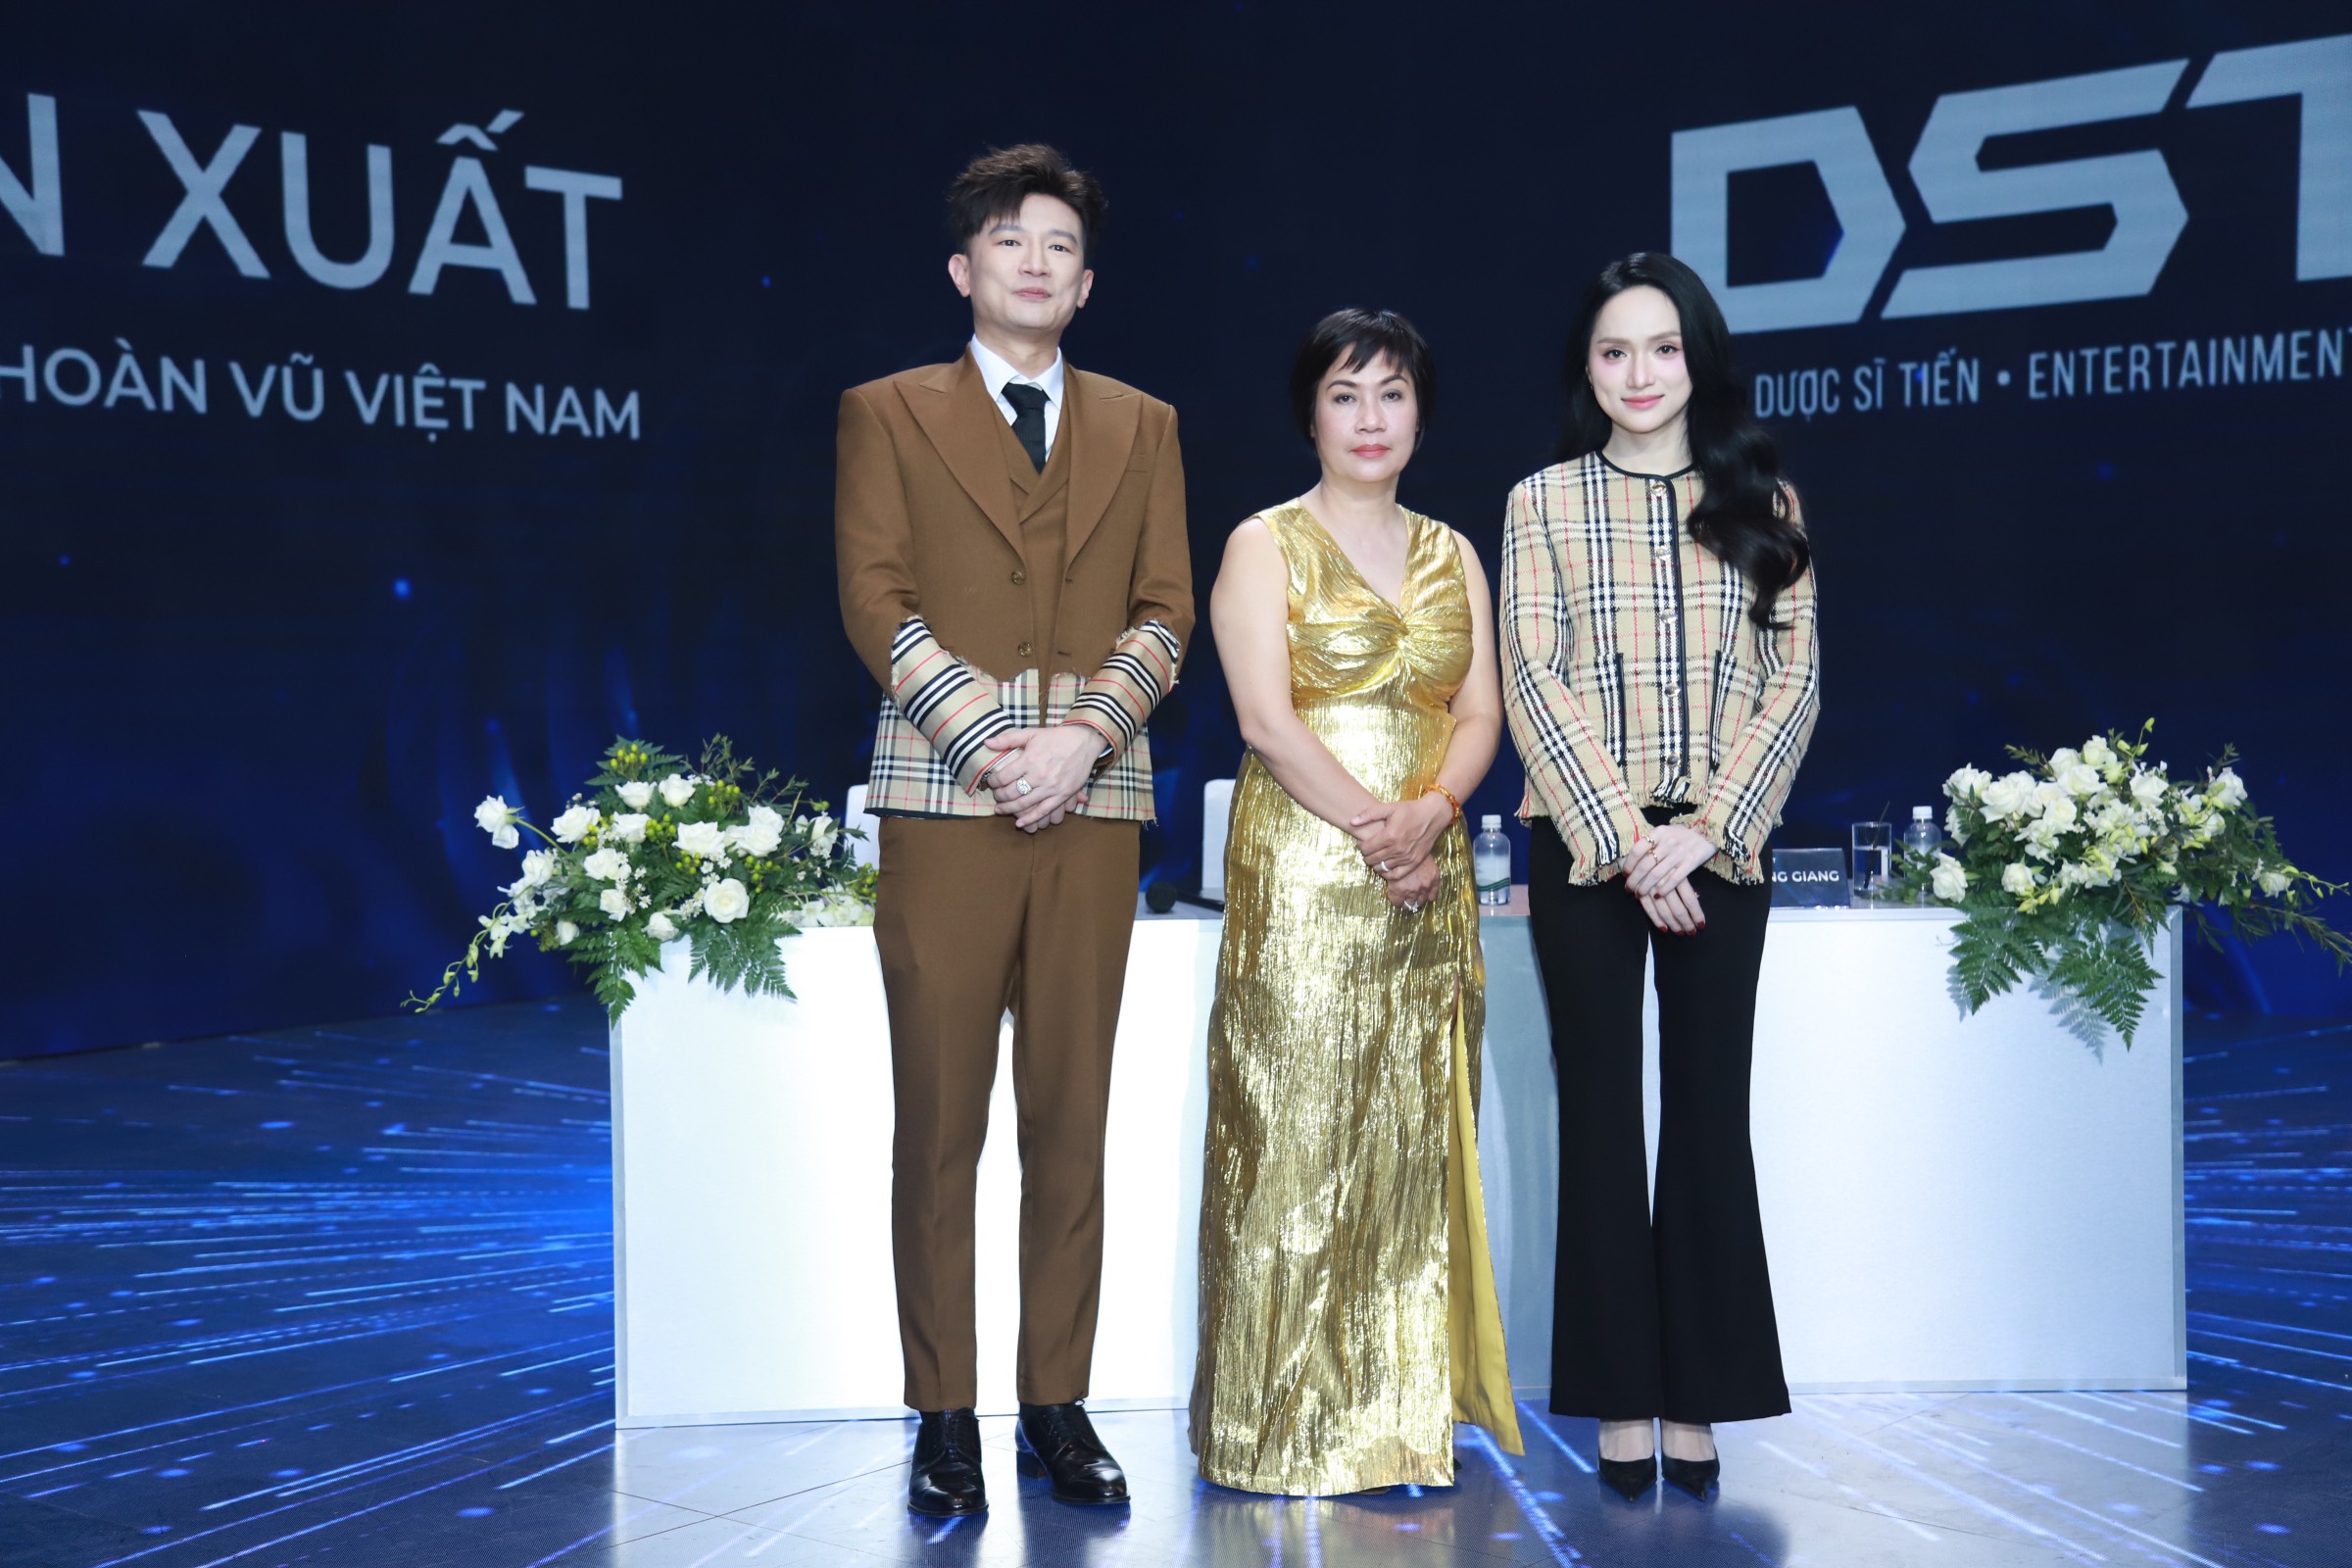 Dược Sĩ Tiến, Hoa hậu Hương Giang và bà Thúy Nga - người sở hữu bản quyền Miss Universe Vietnam tại lễ ký kết hợp tác